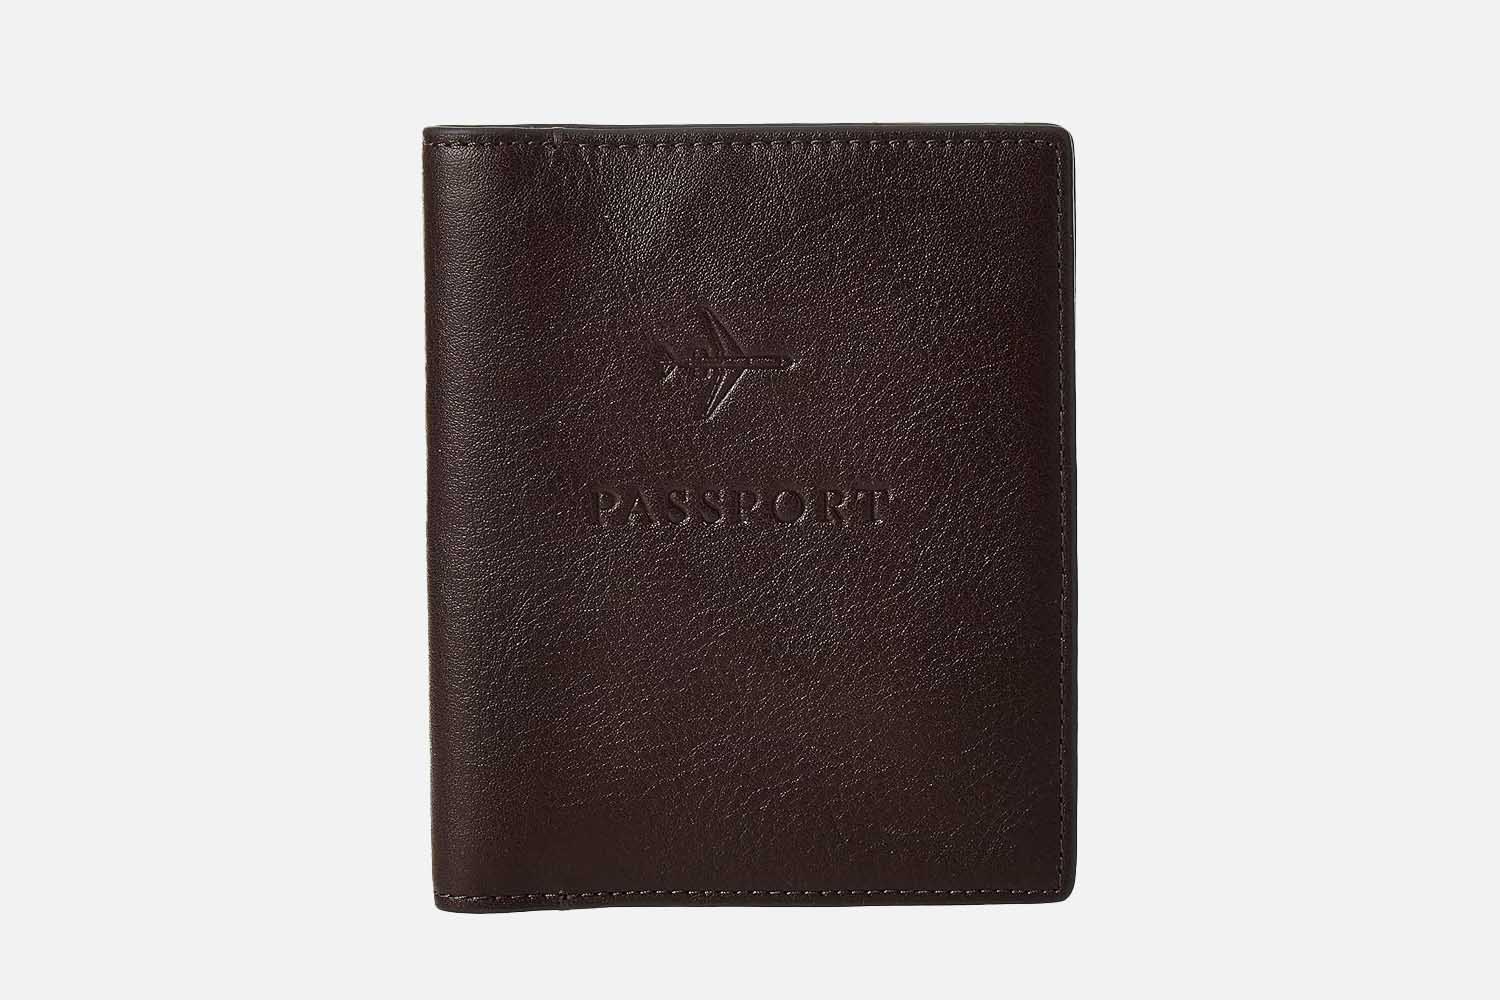 Fossil Leather RFID Blocking Passport Holder Case Wallet